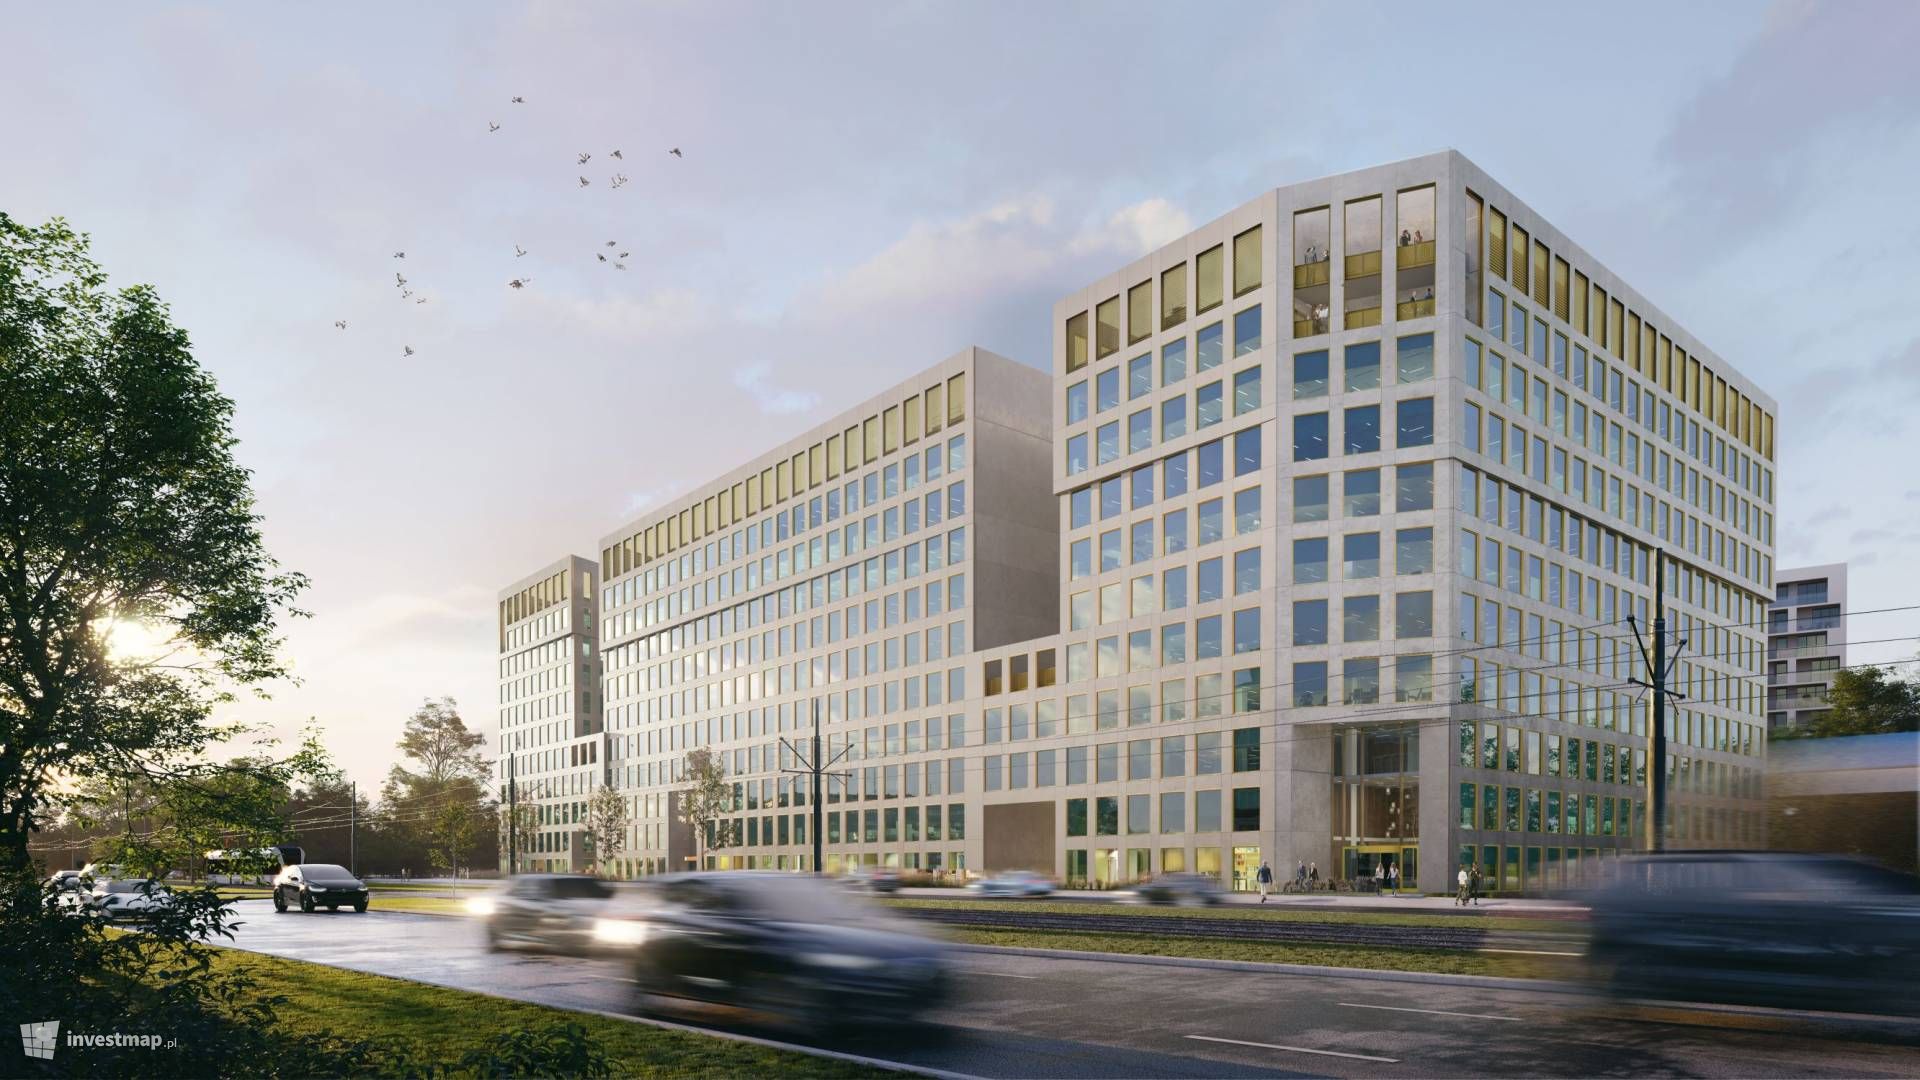 Przy ulicy Fabrycznej w Krakowie powstaje nowy kompleks biurowy Brain Park 